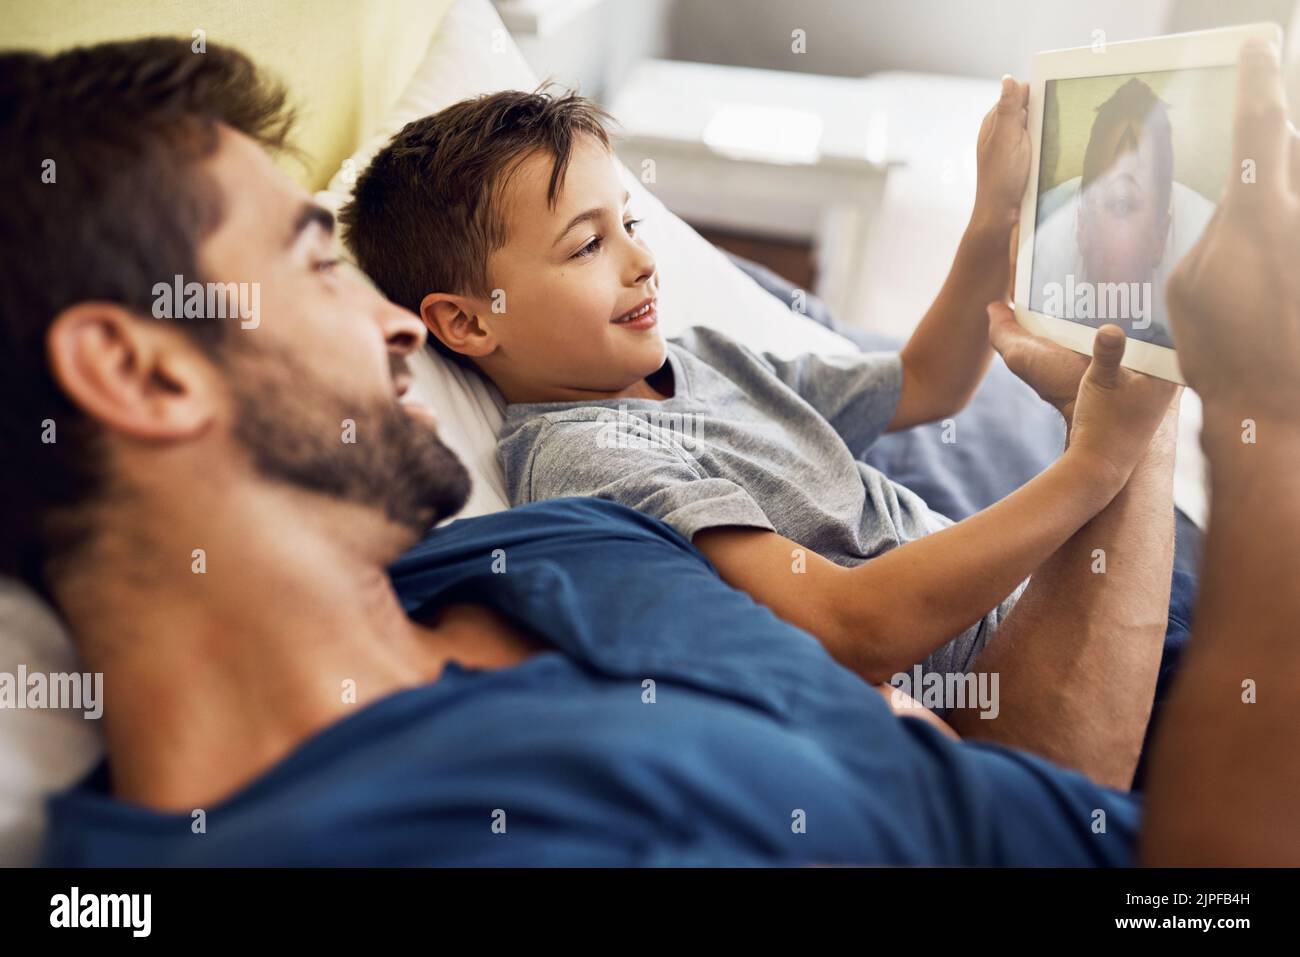 Intrattenimento senza fine grazie alla tecnologia. Un giovane uomo che usa un tablet digitale con suo figlio a casa. Foto Stock